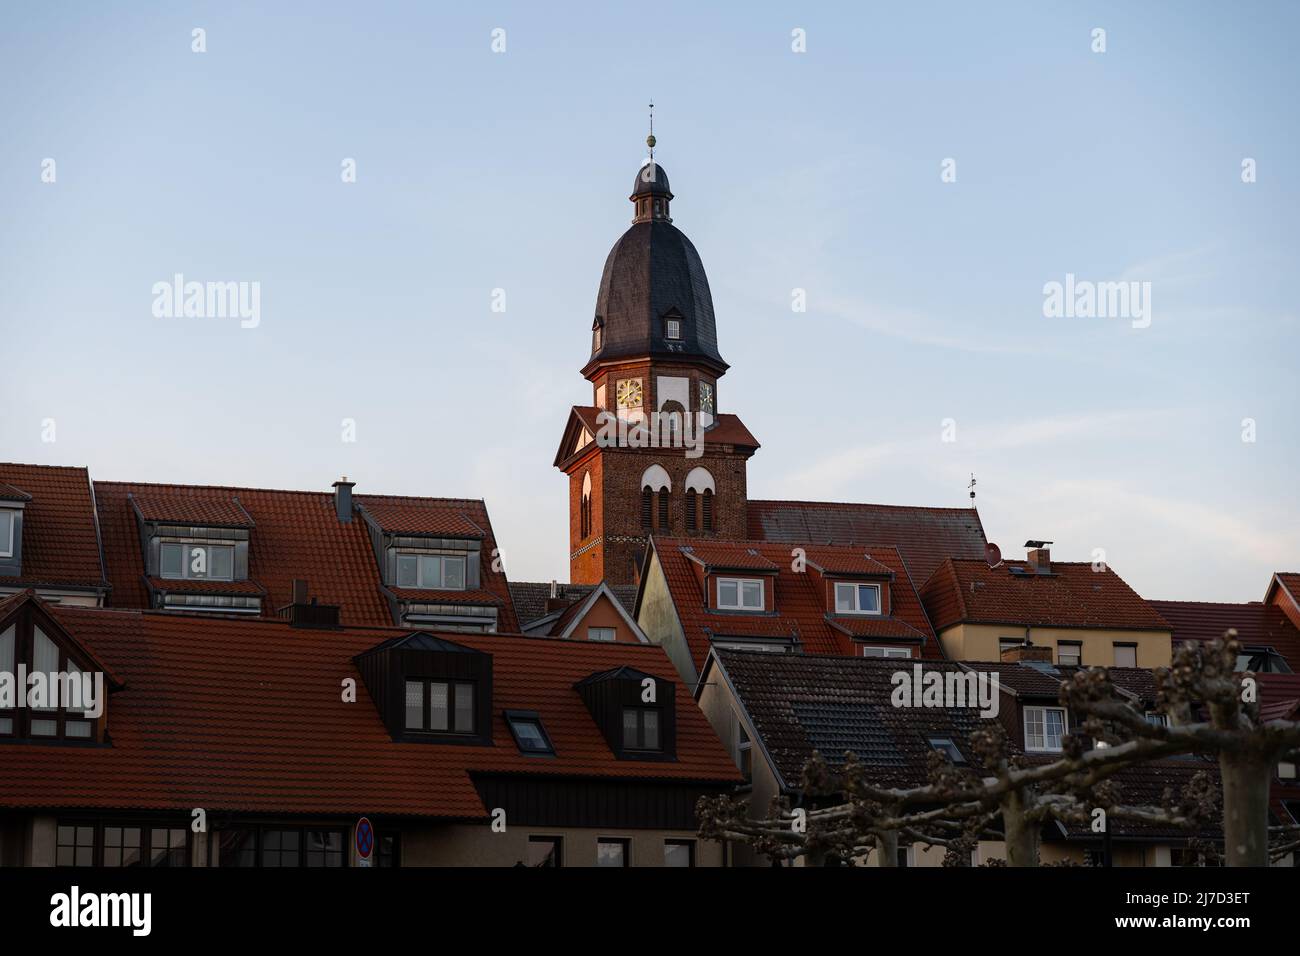 Grande chiesa nello skyline di Waren (Müritz) in Germania. Vecchi edifici in città con tetti di tegole rosse. Architettura tradizionale di sera. Foto Stock